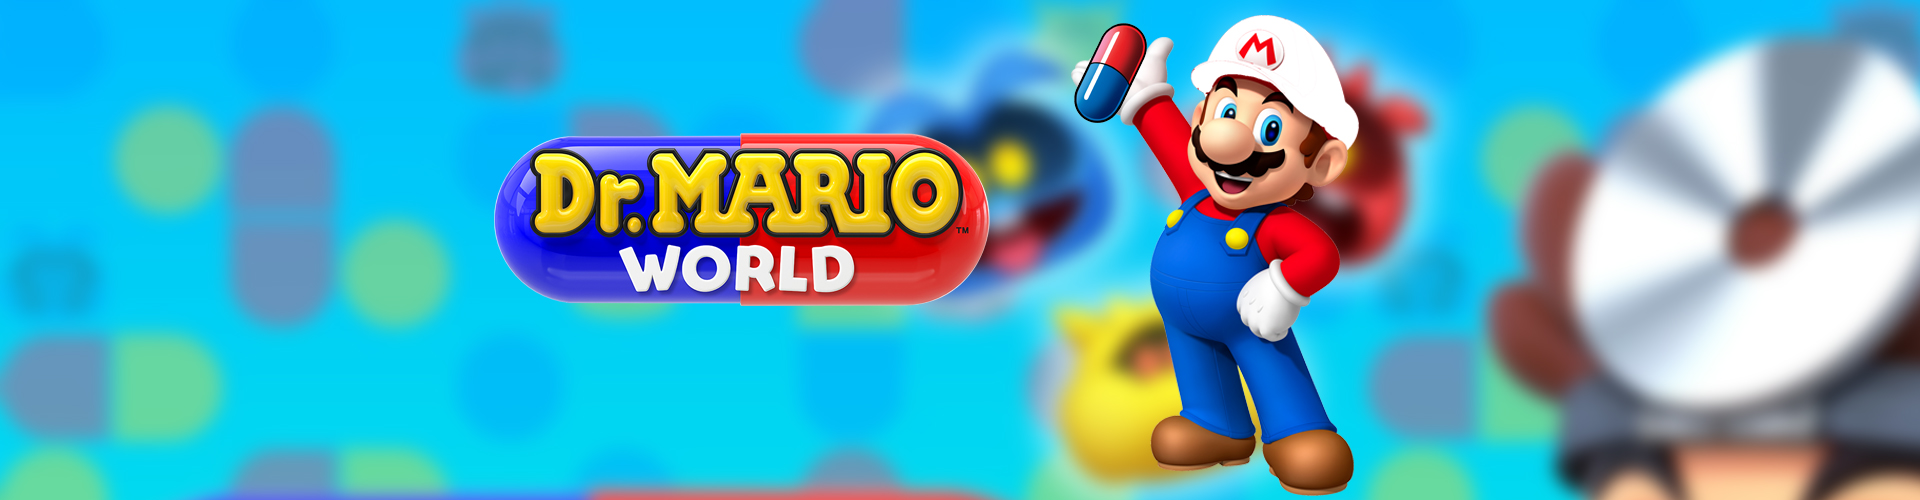 Dr. Mario World game